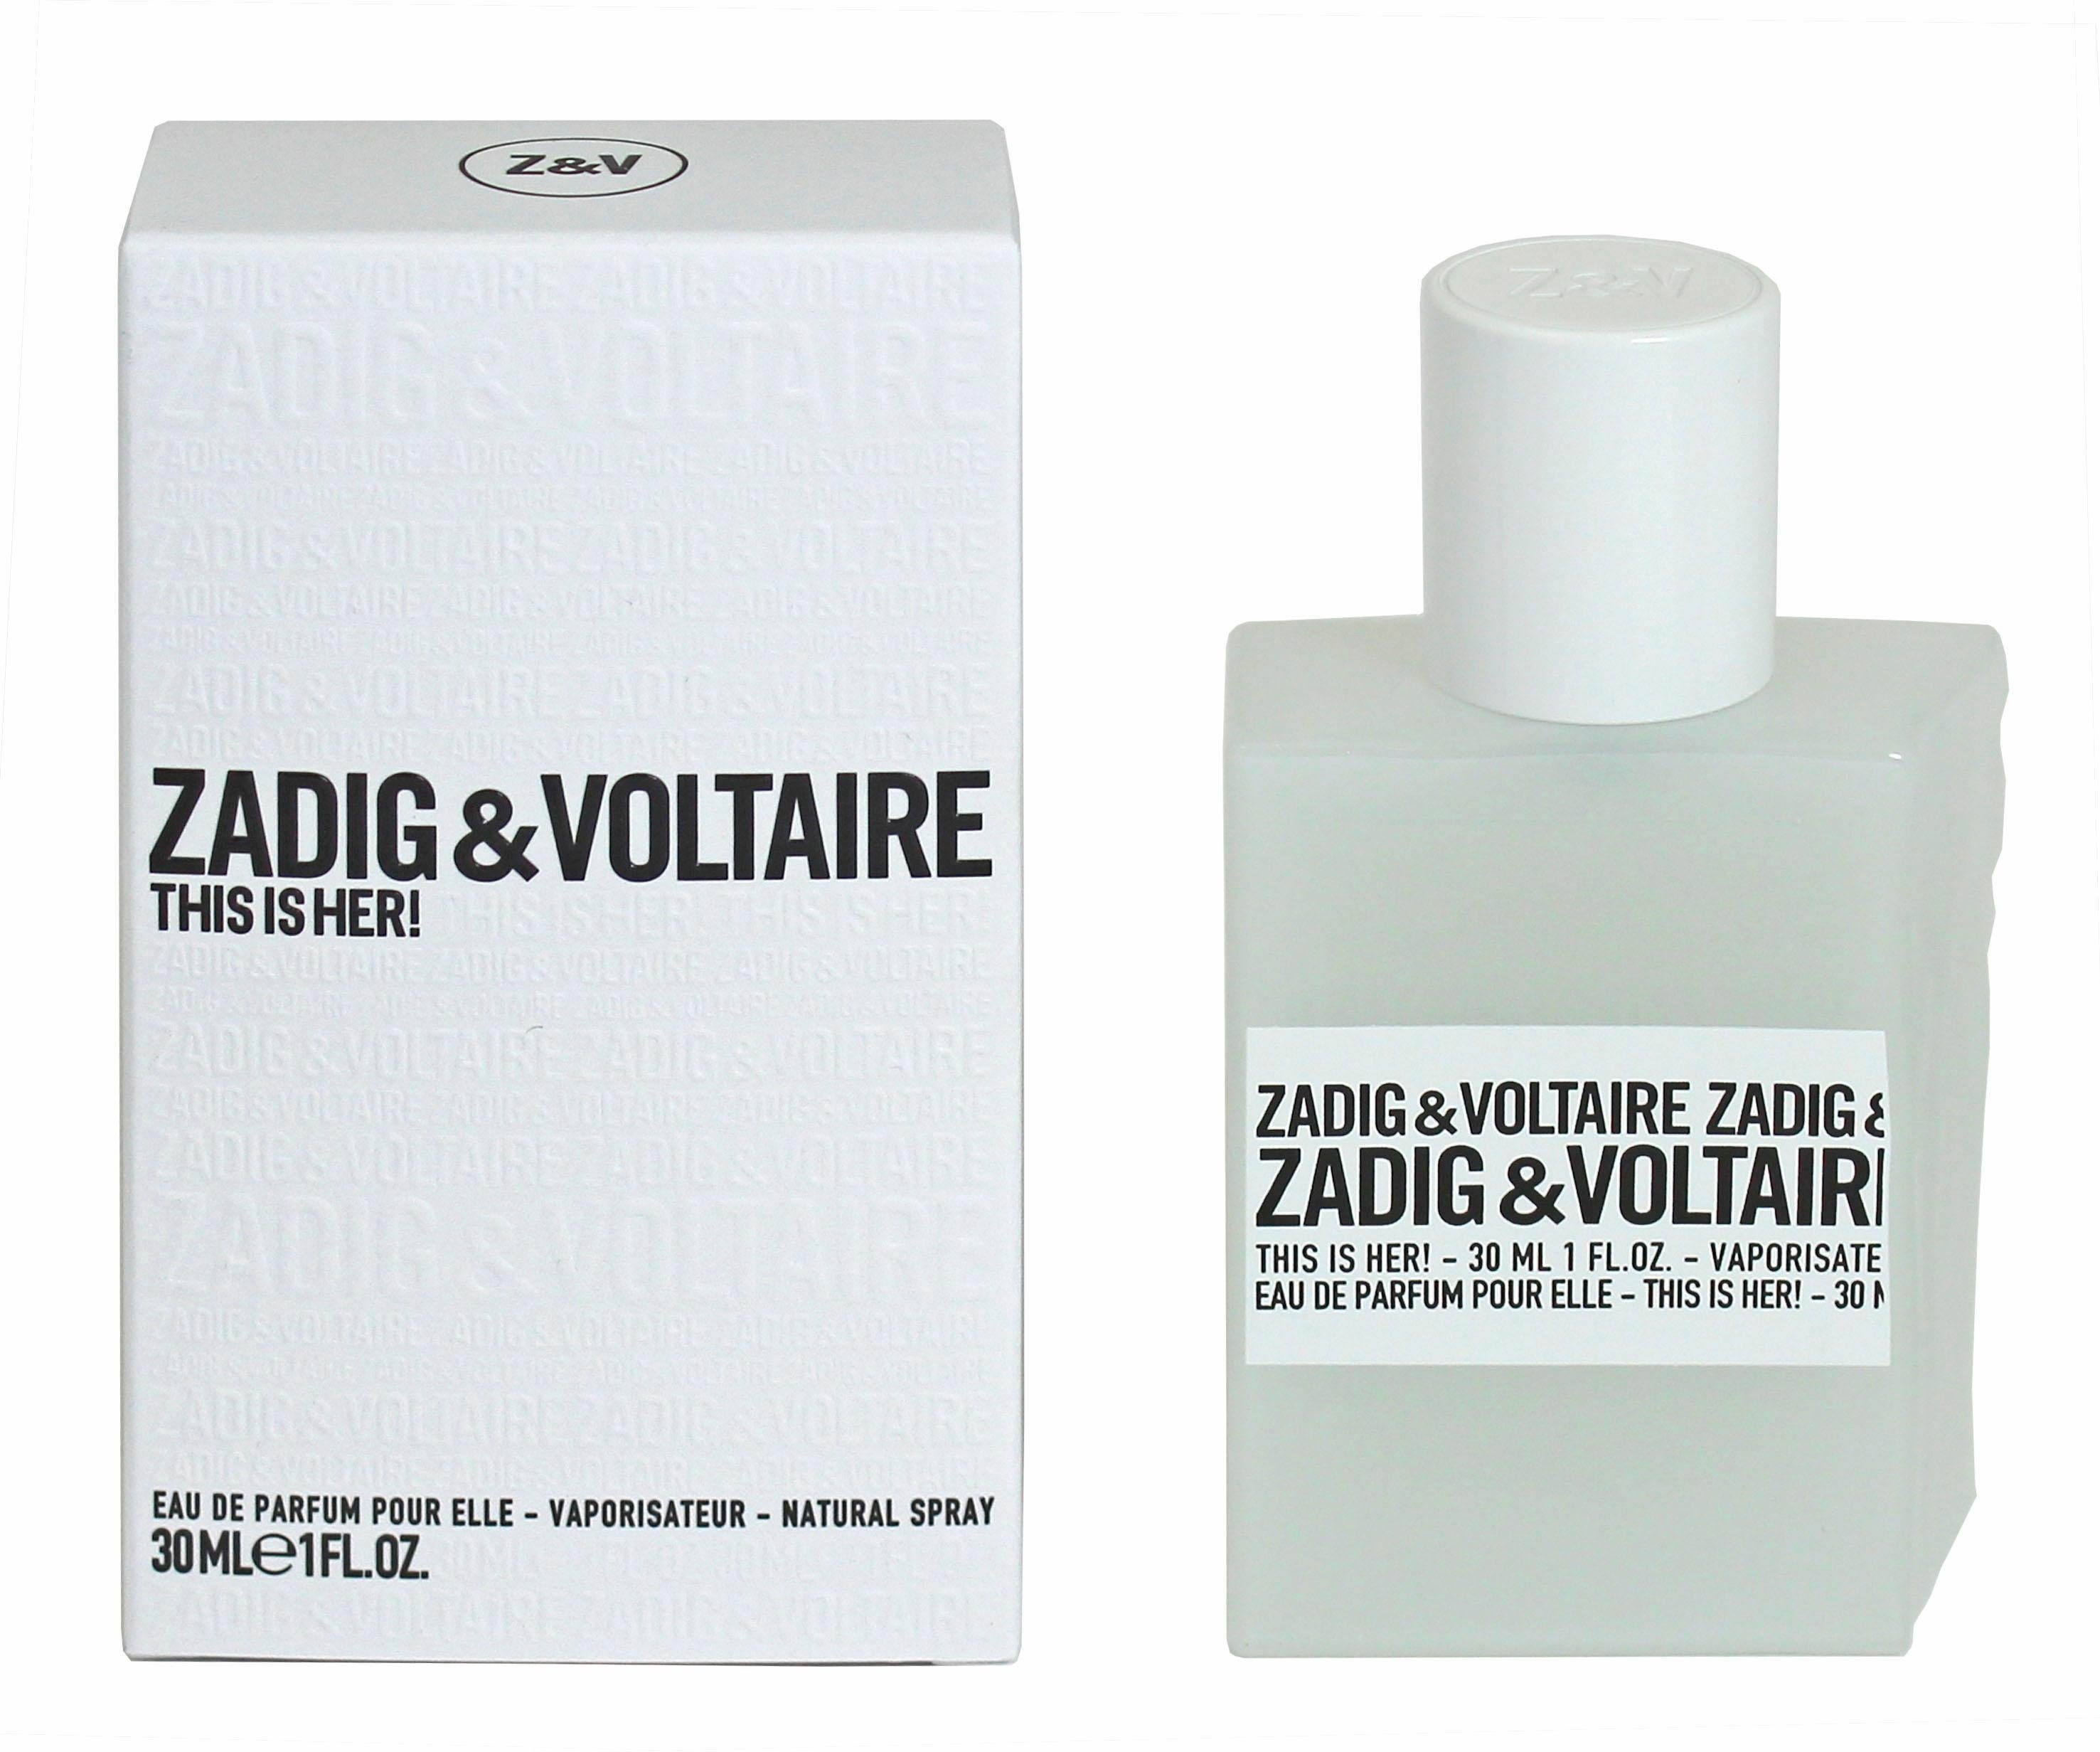 ZADIG & VOLTAIRE This is Parfum Her! de Eau